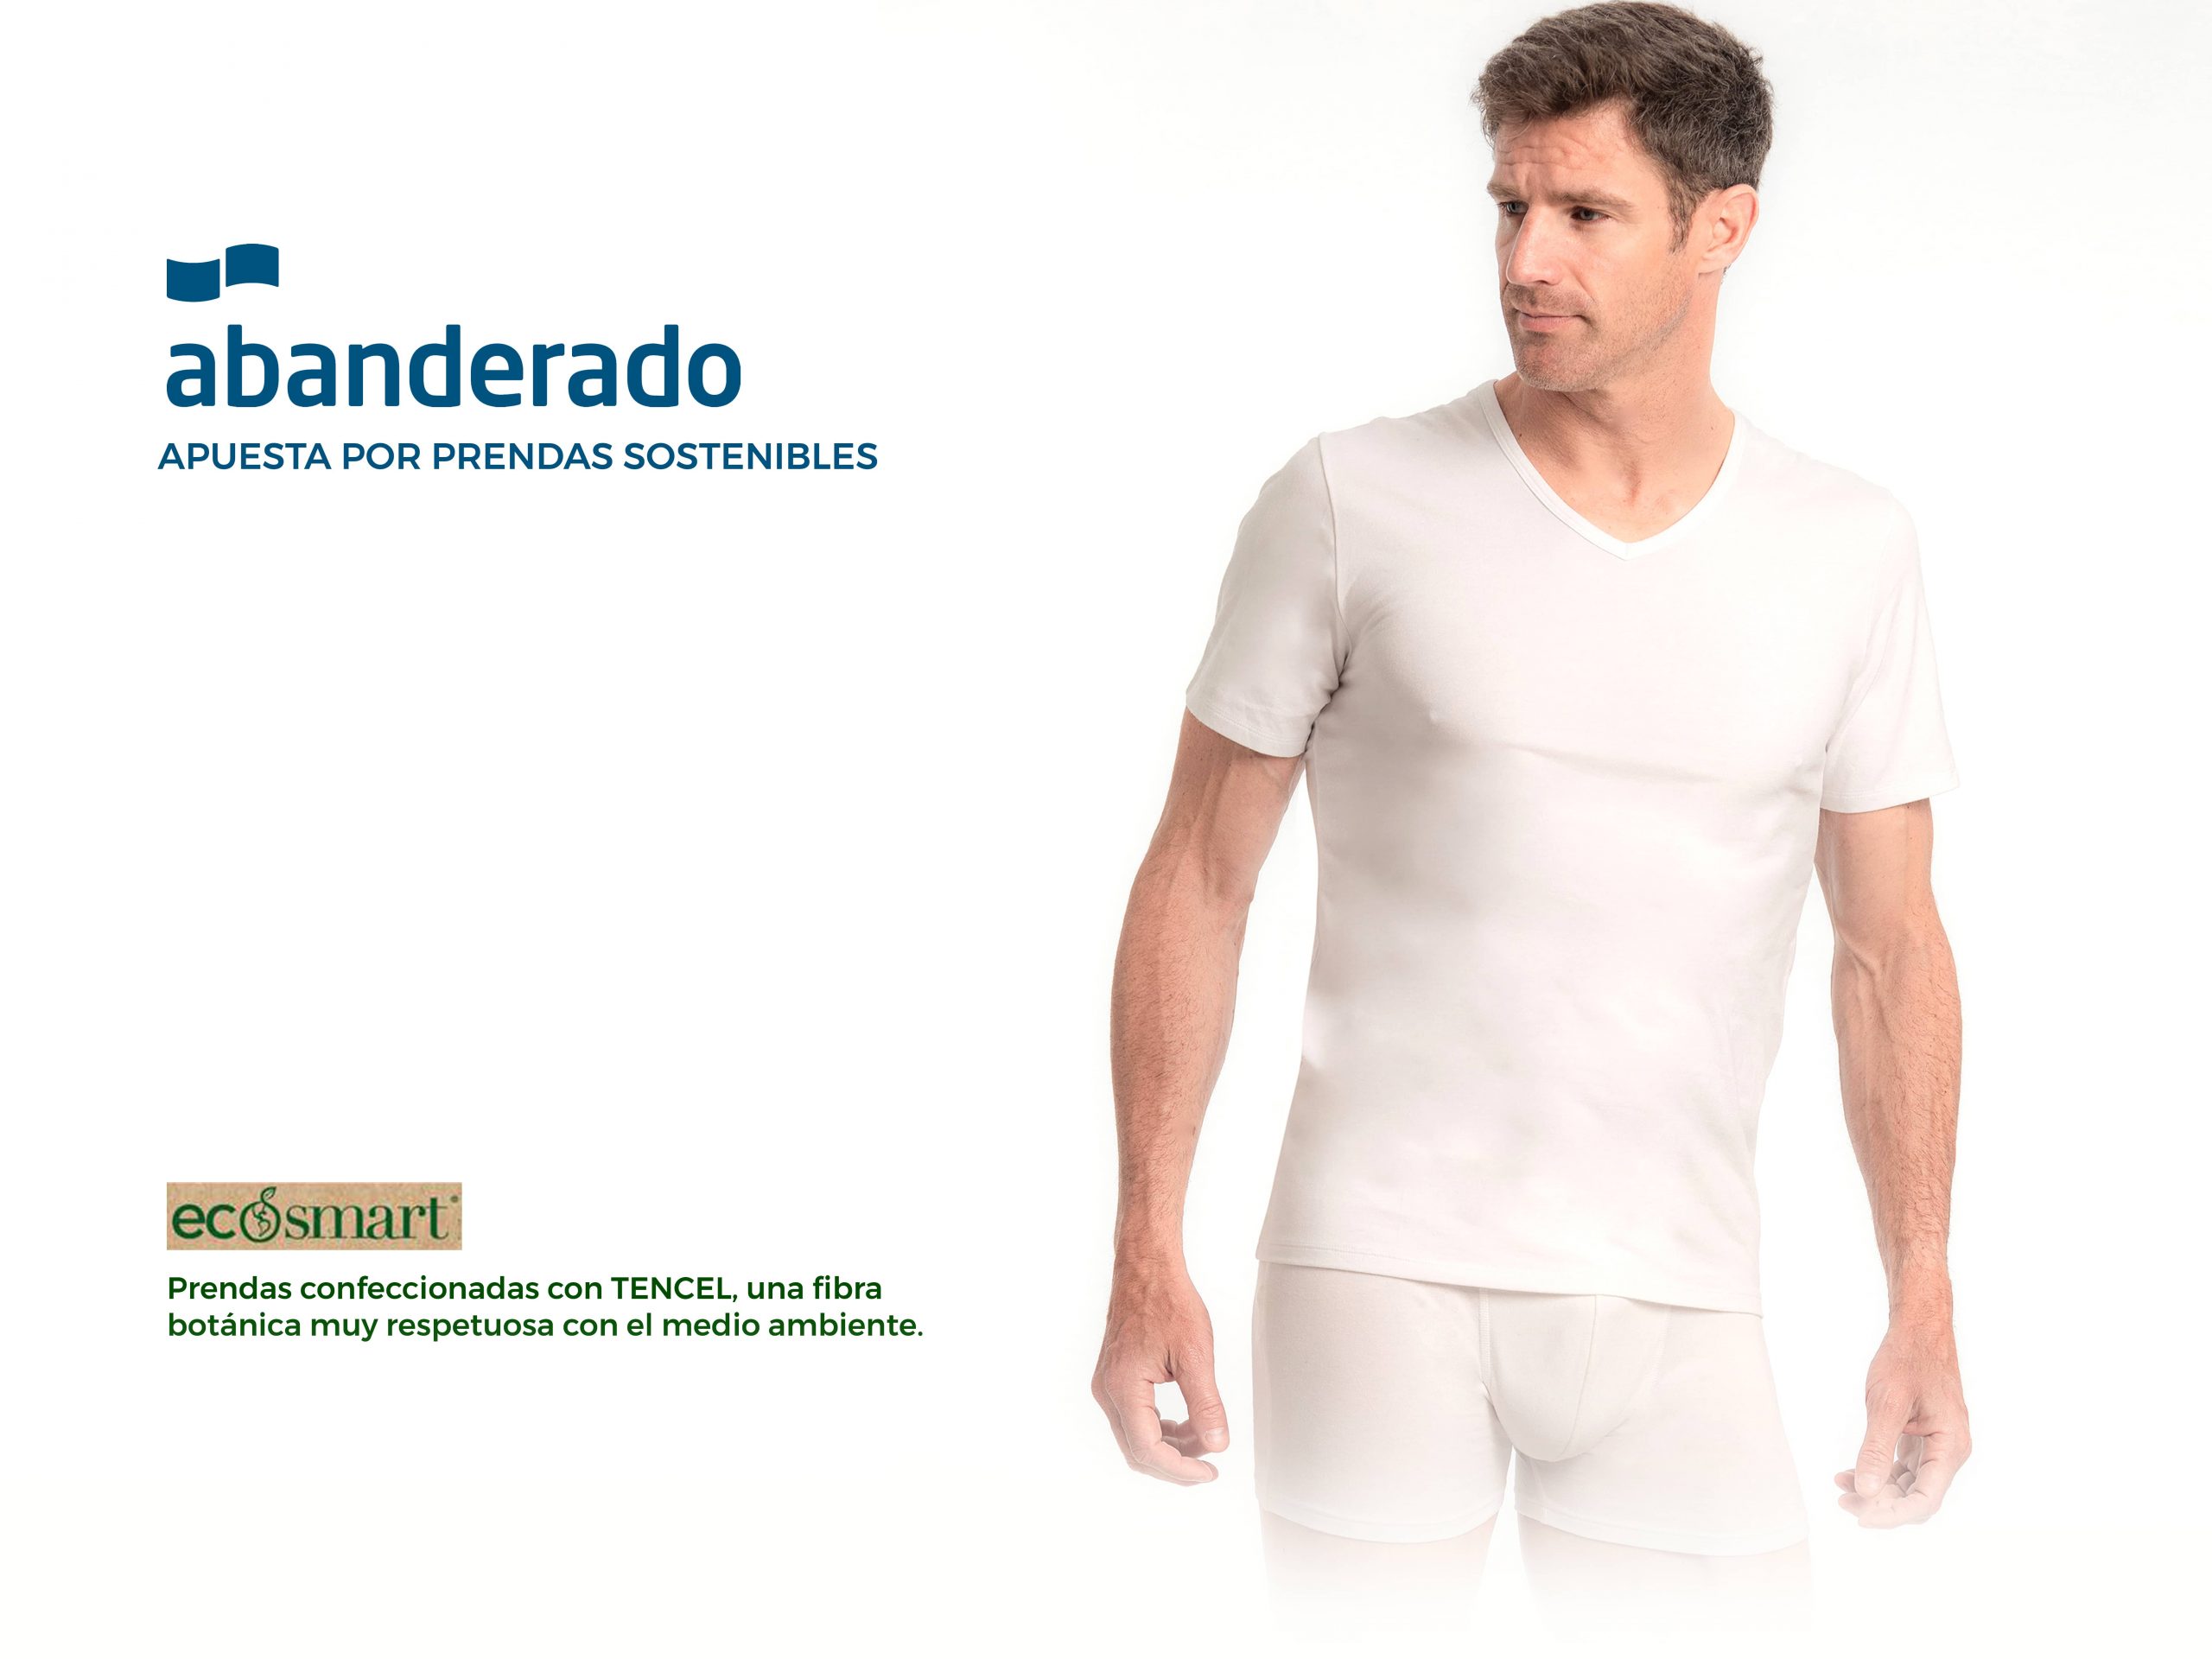 EcoSmart la nueva linea de ropa interior ecológica de Abanderado